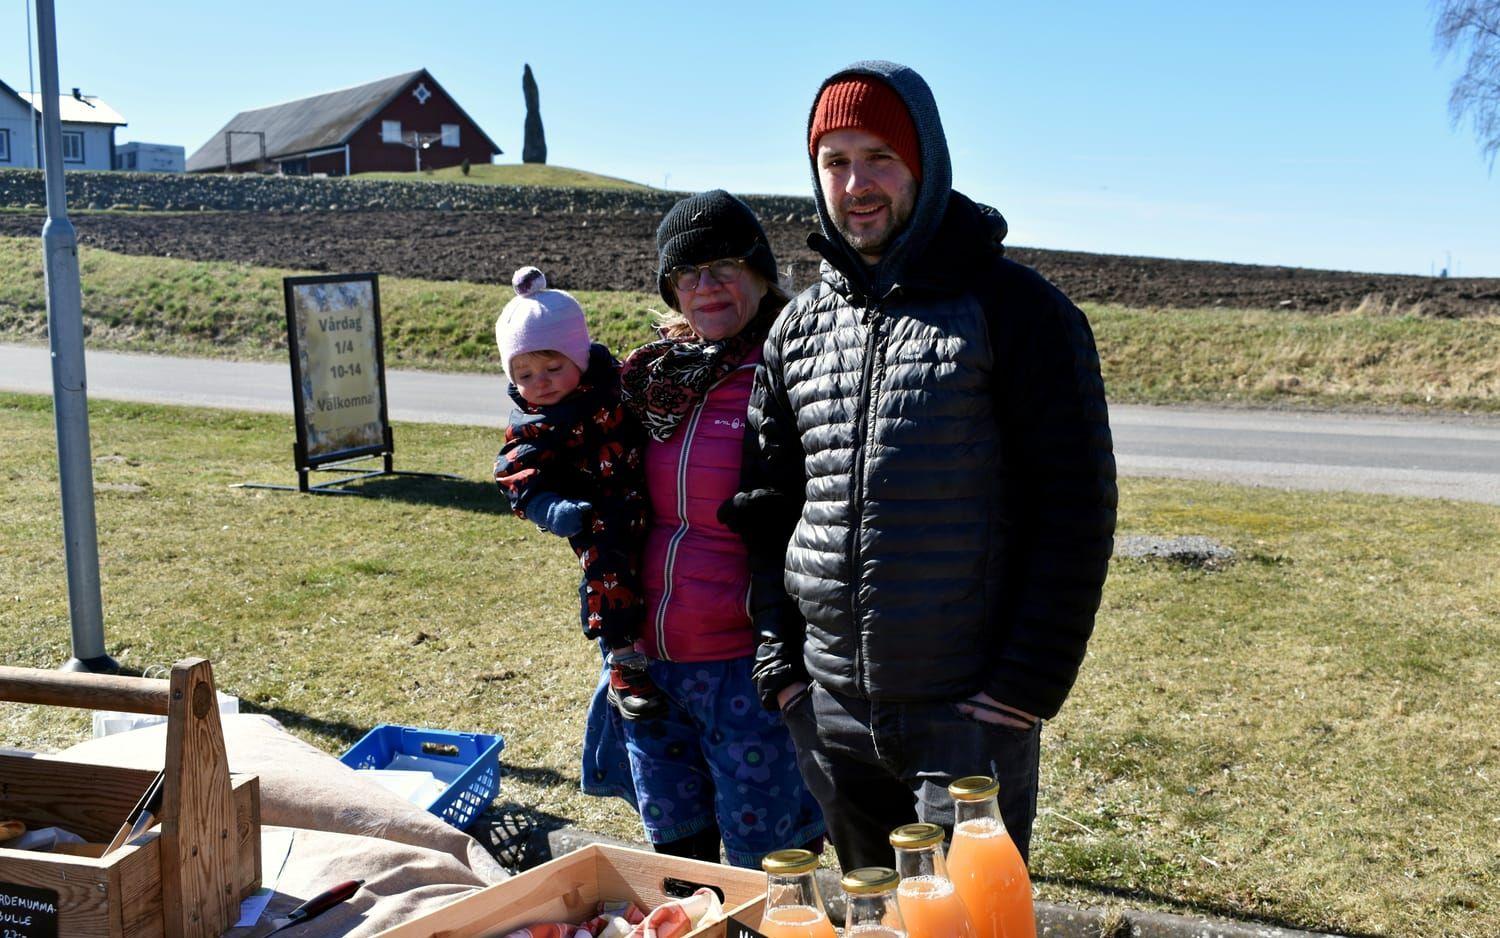 Catarina Darnfors och Cedric Lecomte, från Flygande jästens hantverksbageri, sålde surdegsbröd bakat på mjöl från Limabacka kvarn.